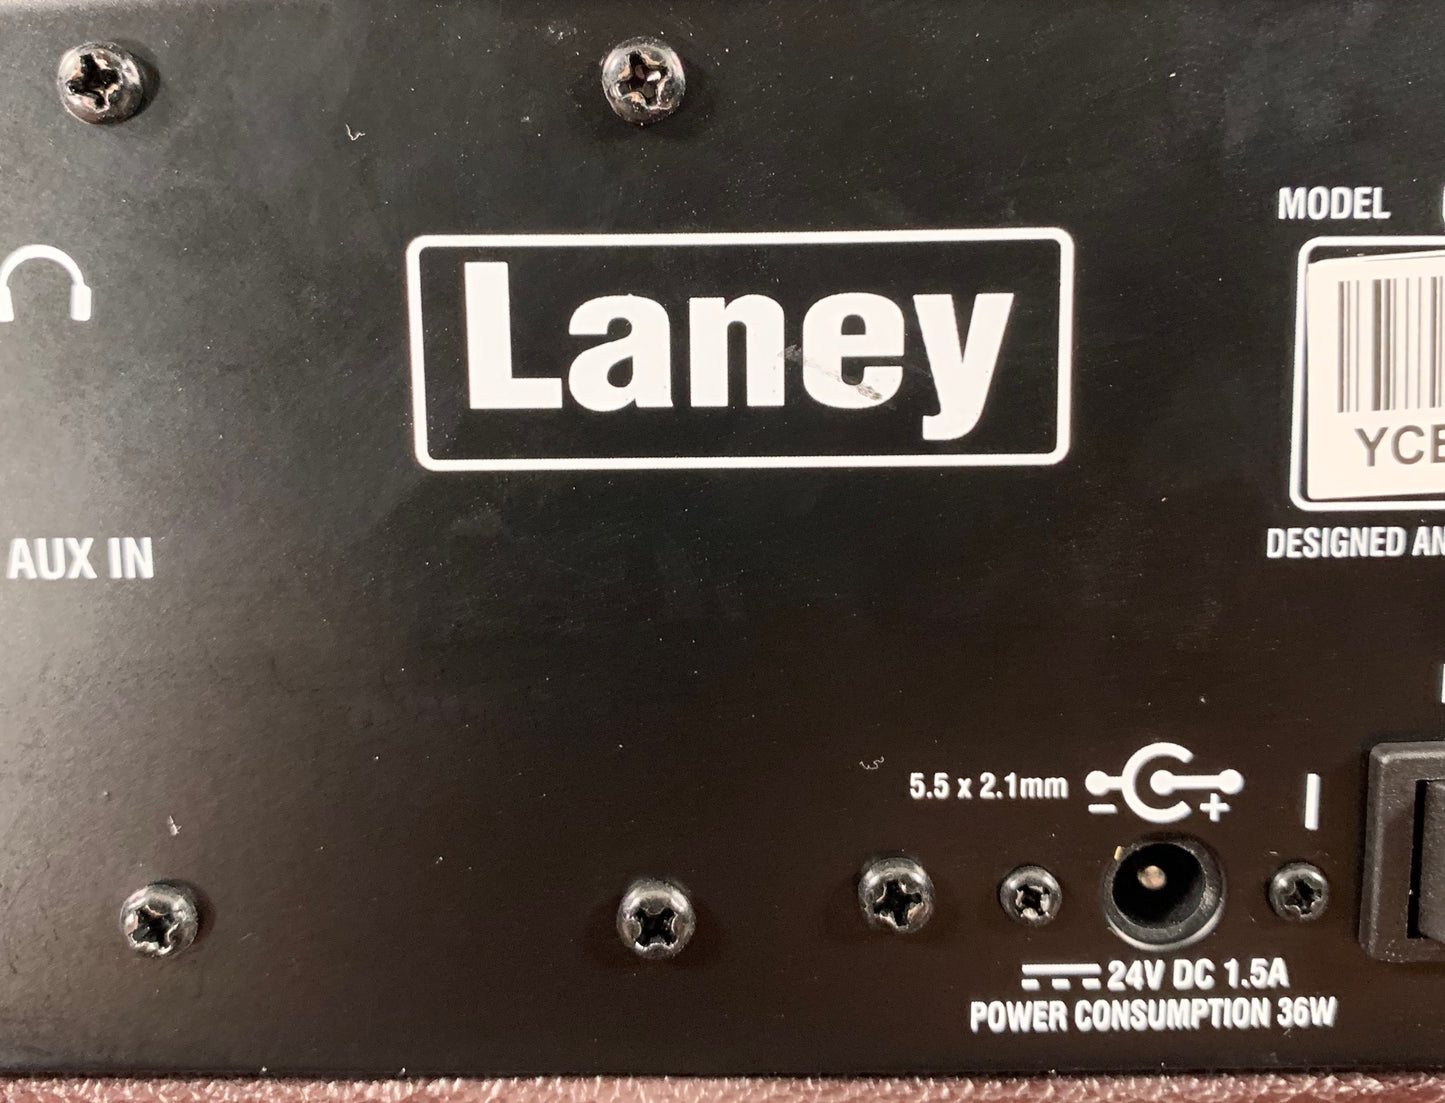 Laney A-SOLO 1x8" 60 Watt 2 Channel Portable Vocal & Acoustic Guitar Amplifier